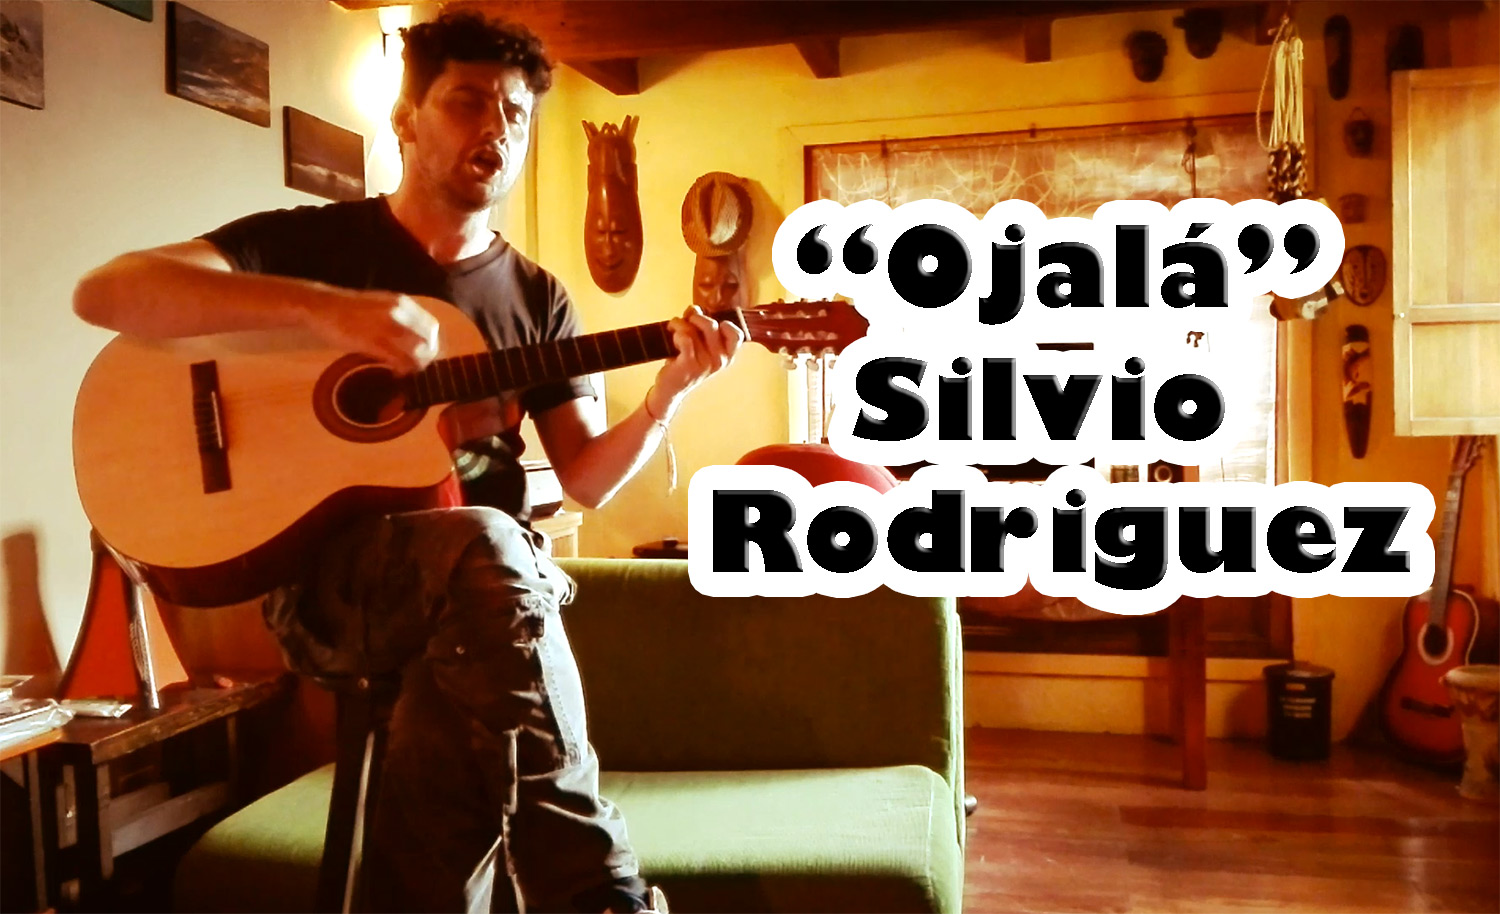 La canción "Ojalá" del cantautor cubano Silvio Rodriguez